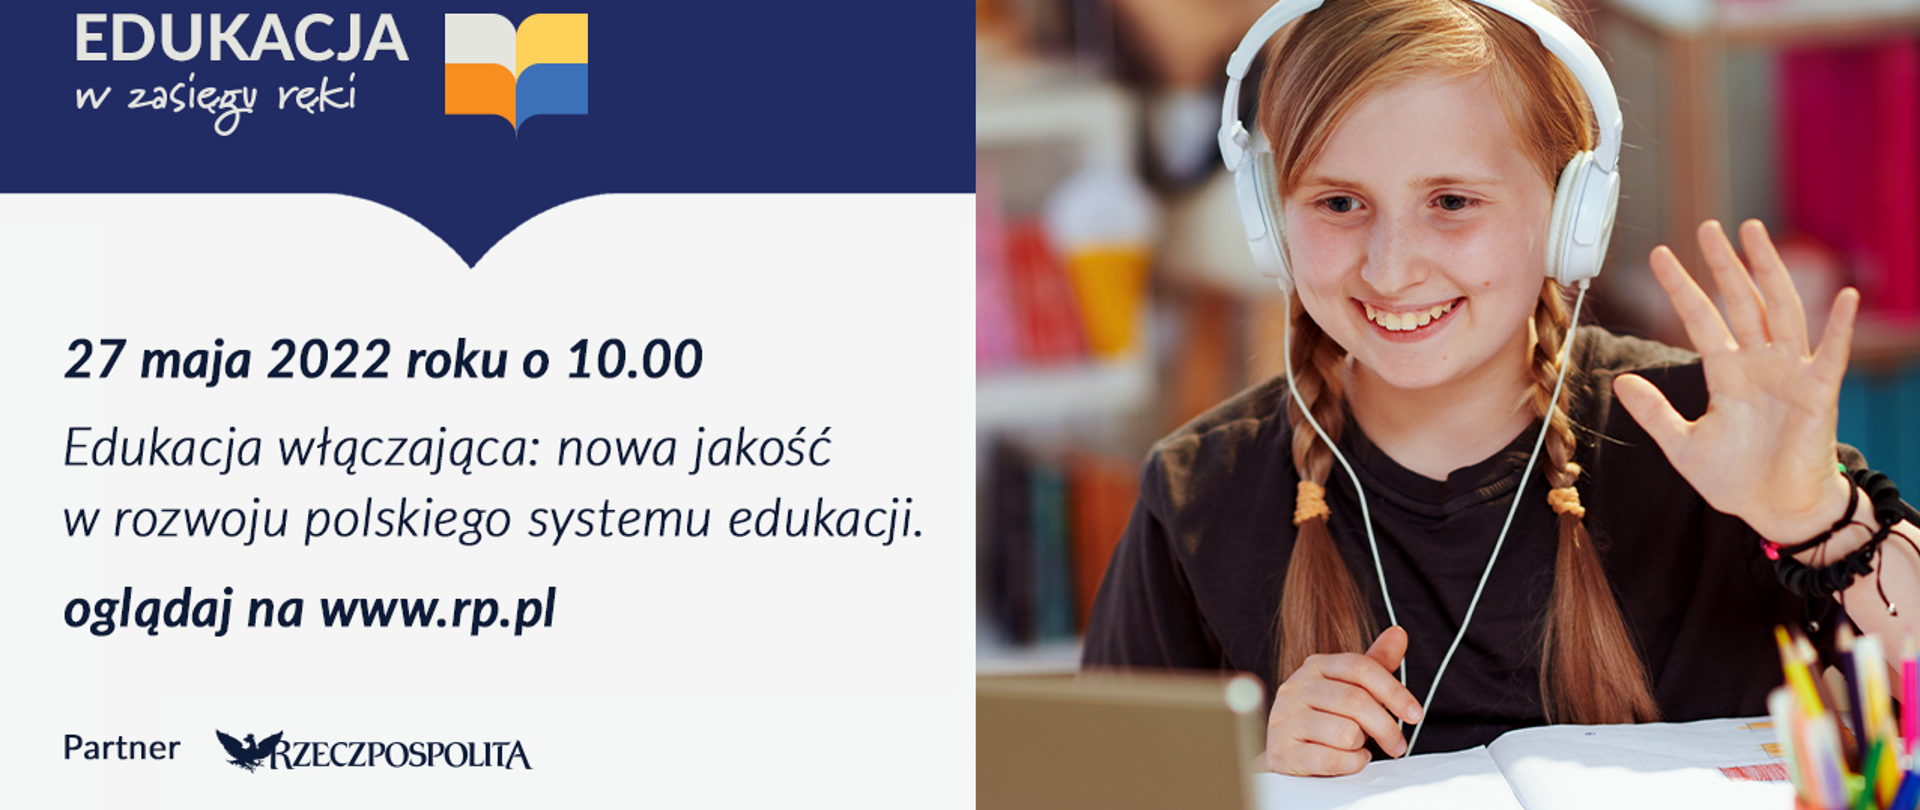 Grafika z napisem 27 maja 2022 0 10.00 - Edukacja włączająca: nowa jakość w rozwoju polskiego systemu edukacji - oglądaj na www.rp.pl, obok zdjęcie dziecka w słuchawkach.